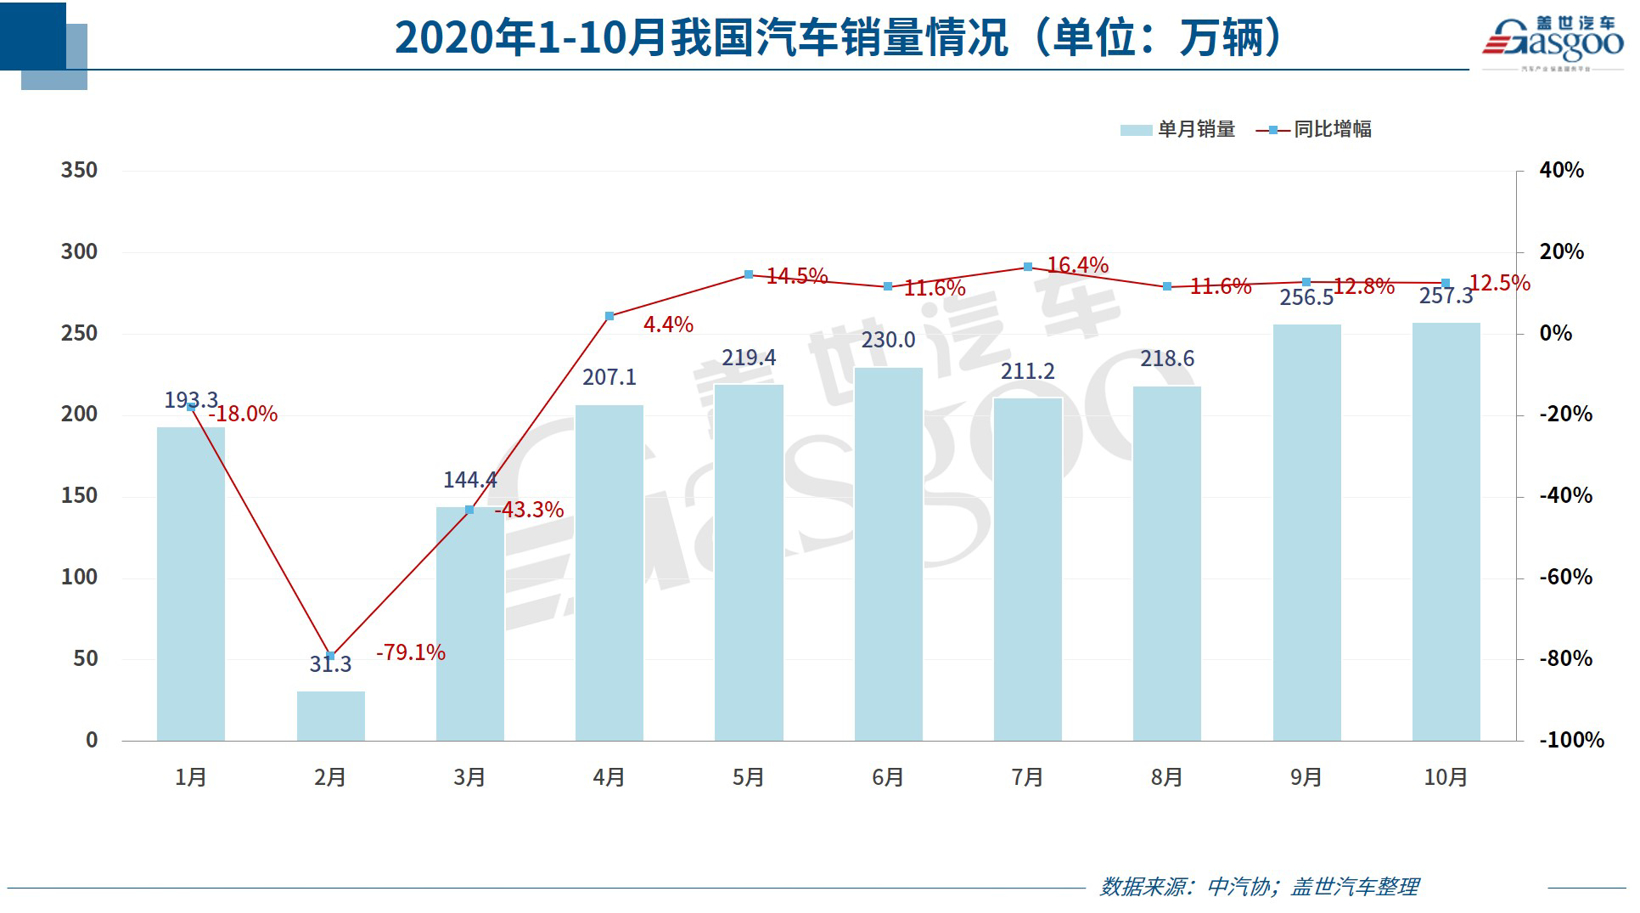 中国汽车零部件行业境况已有转变 发展后势被看好